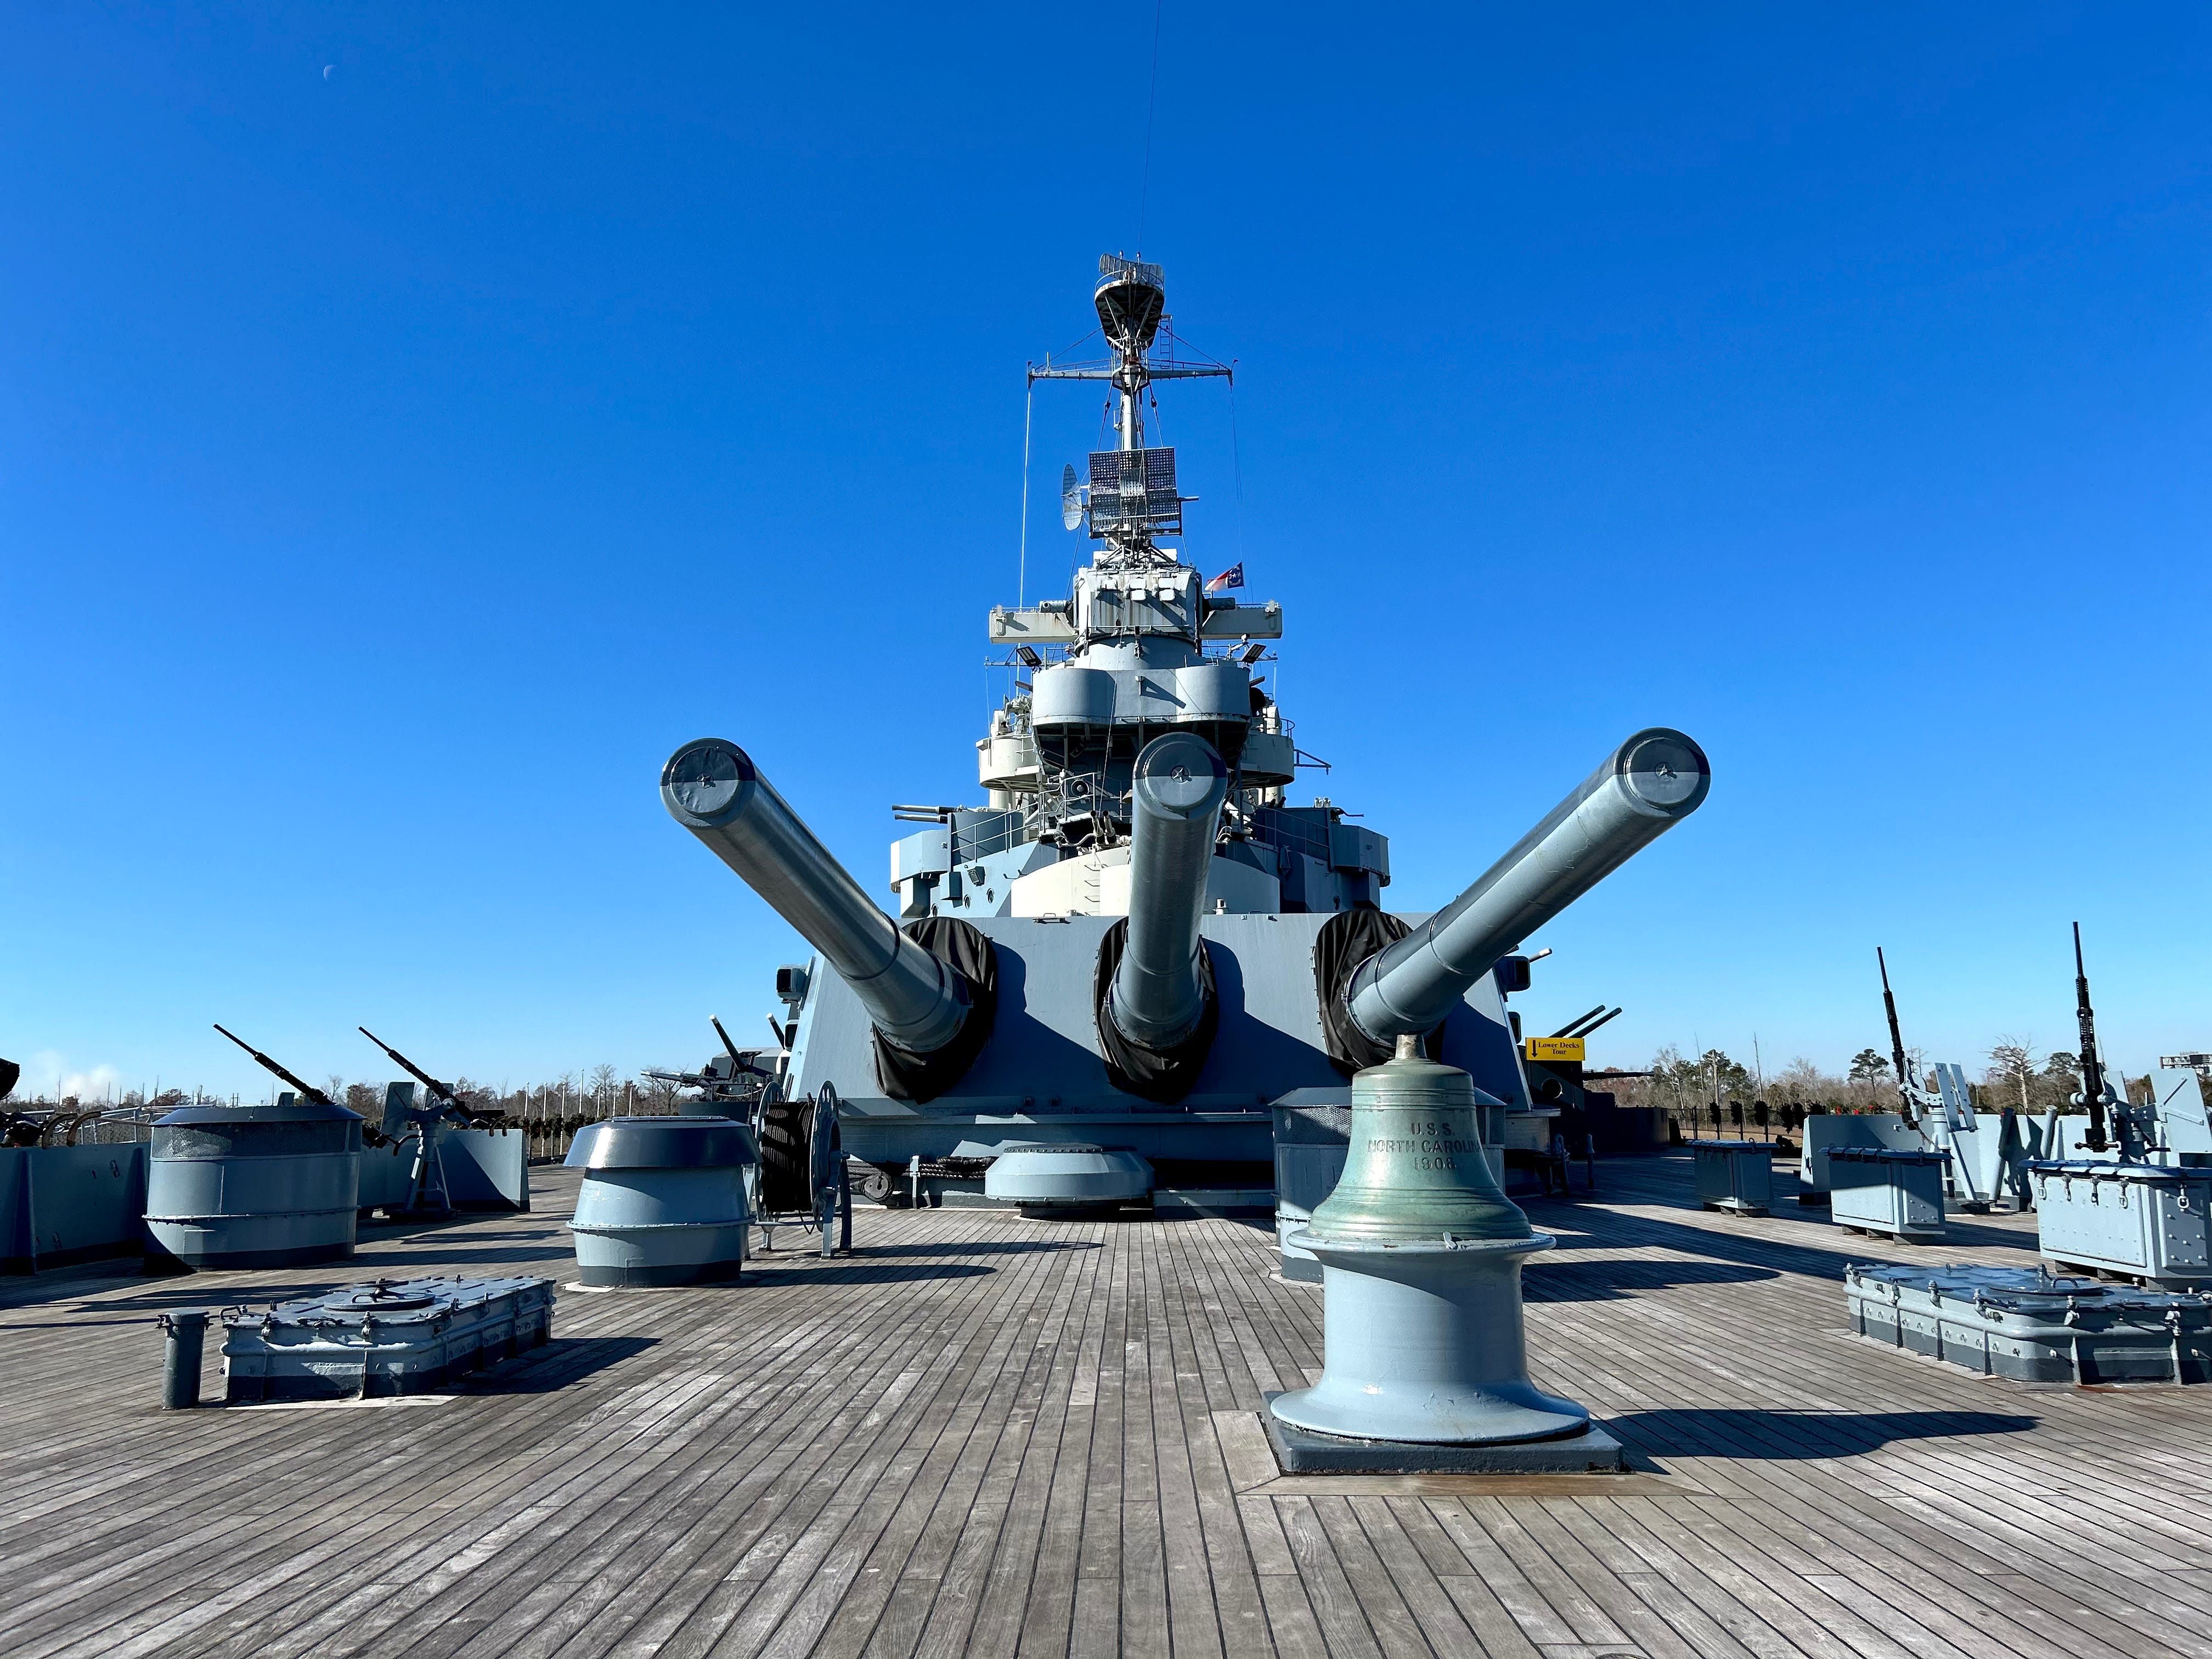 Upper deck of Battleship North Carolina